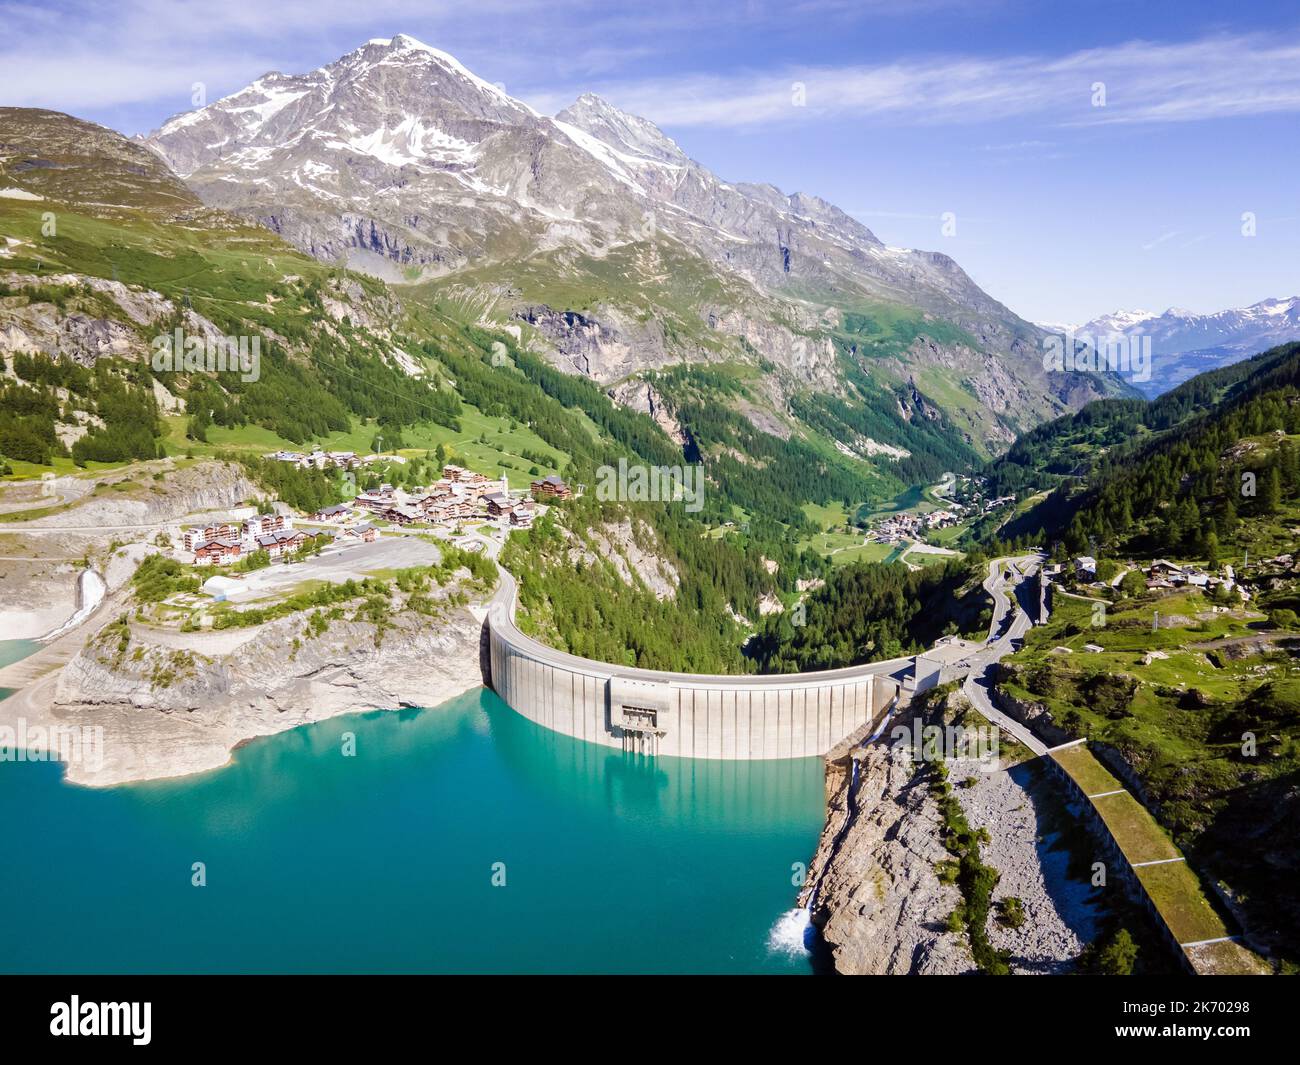 Barrage d'eau et lac réservoir vue aérienne dans les montagnes des Alpes générant de l'hydroélectricité. Faible empreinte CO2, décarboniser, énergie renouvelable, durable Banque D'Images